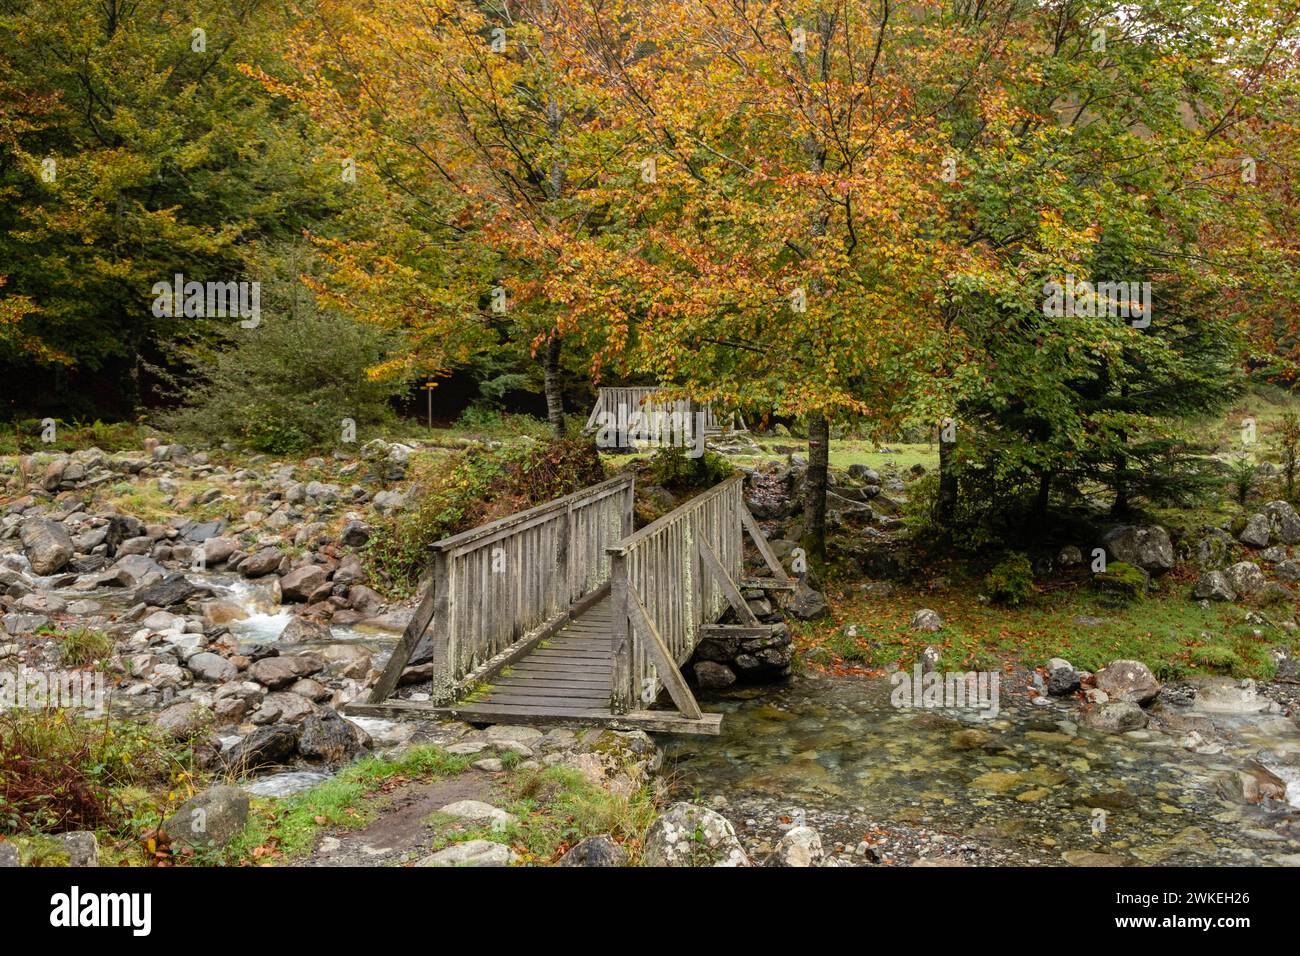 Bosque de Bordes, valle de Valier -Riberot-, Parque Natural Regional de los Pirineos de Ariège, cordillera de los Pirineos, Francia. Foto Stock